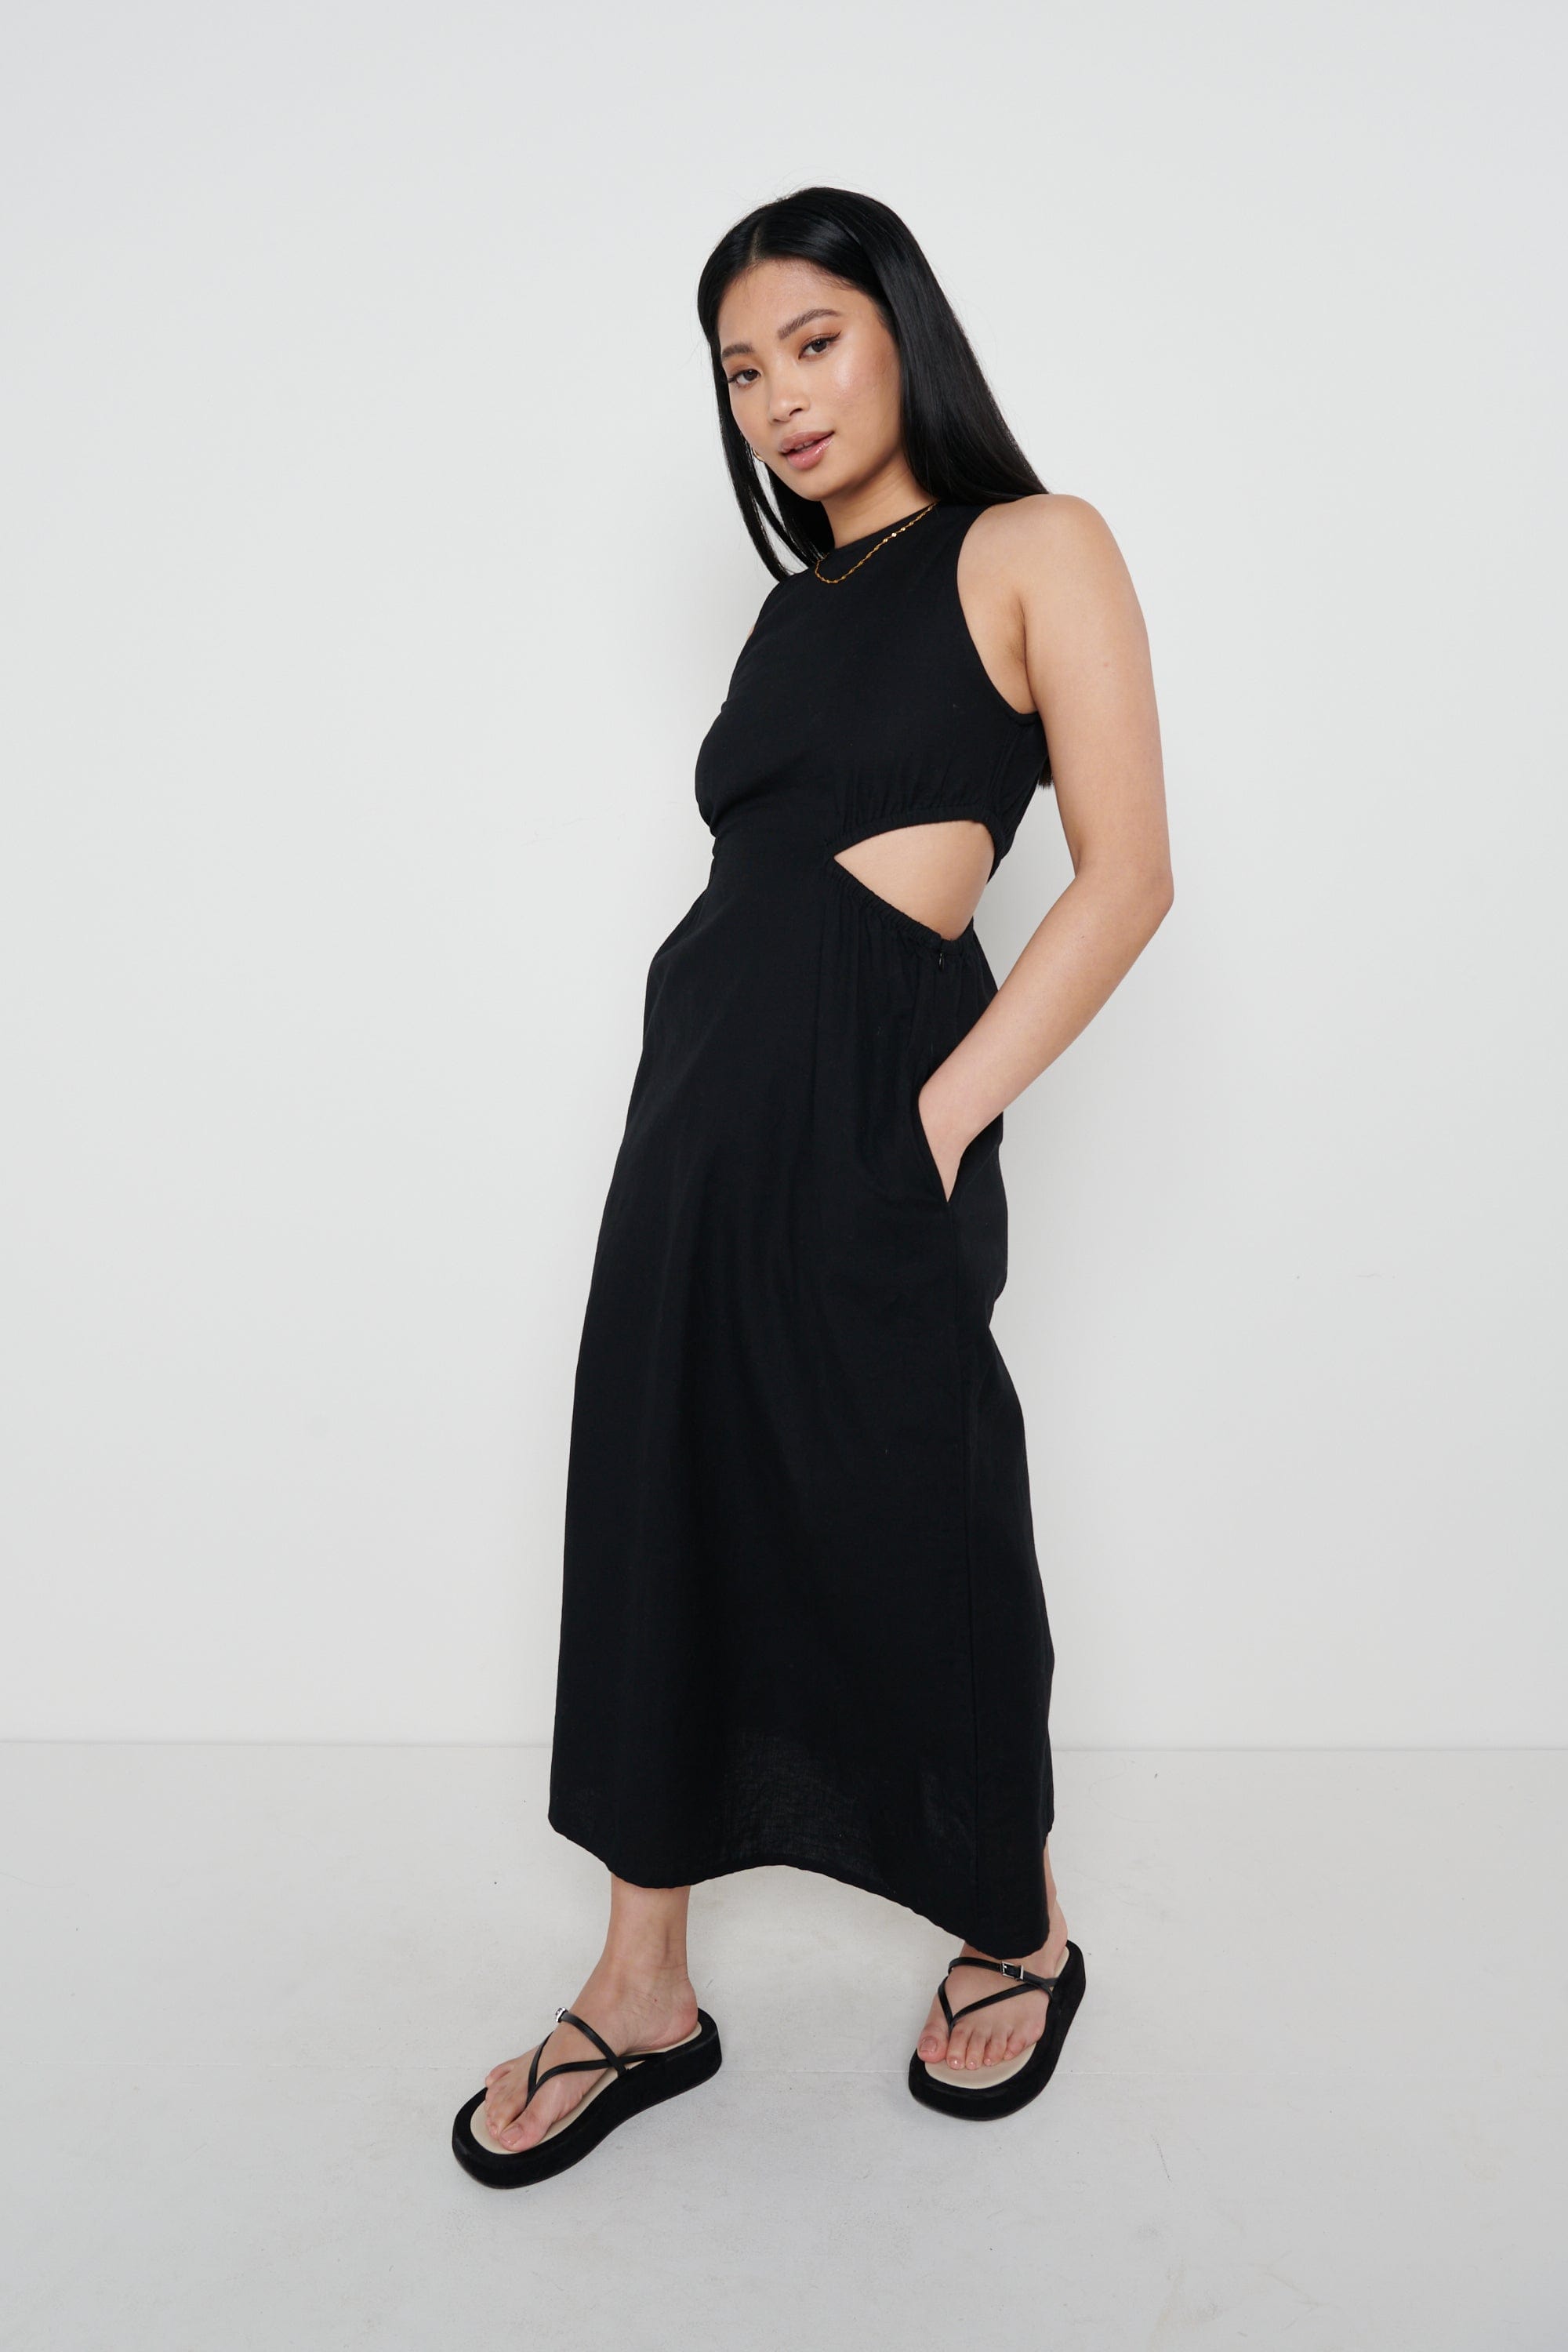 Pascale Cut Out Midaxi Dress - Black, 6